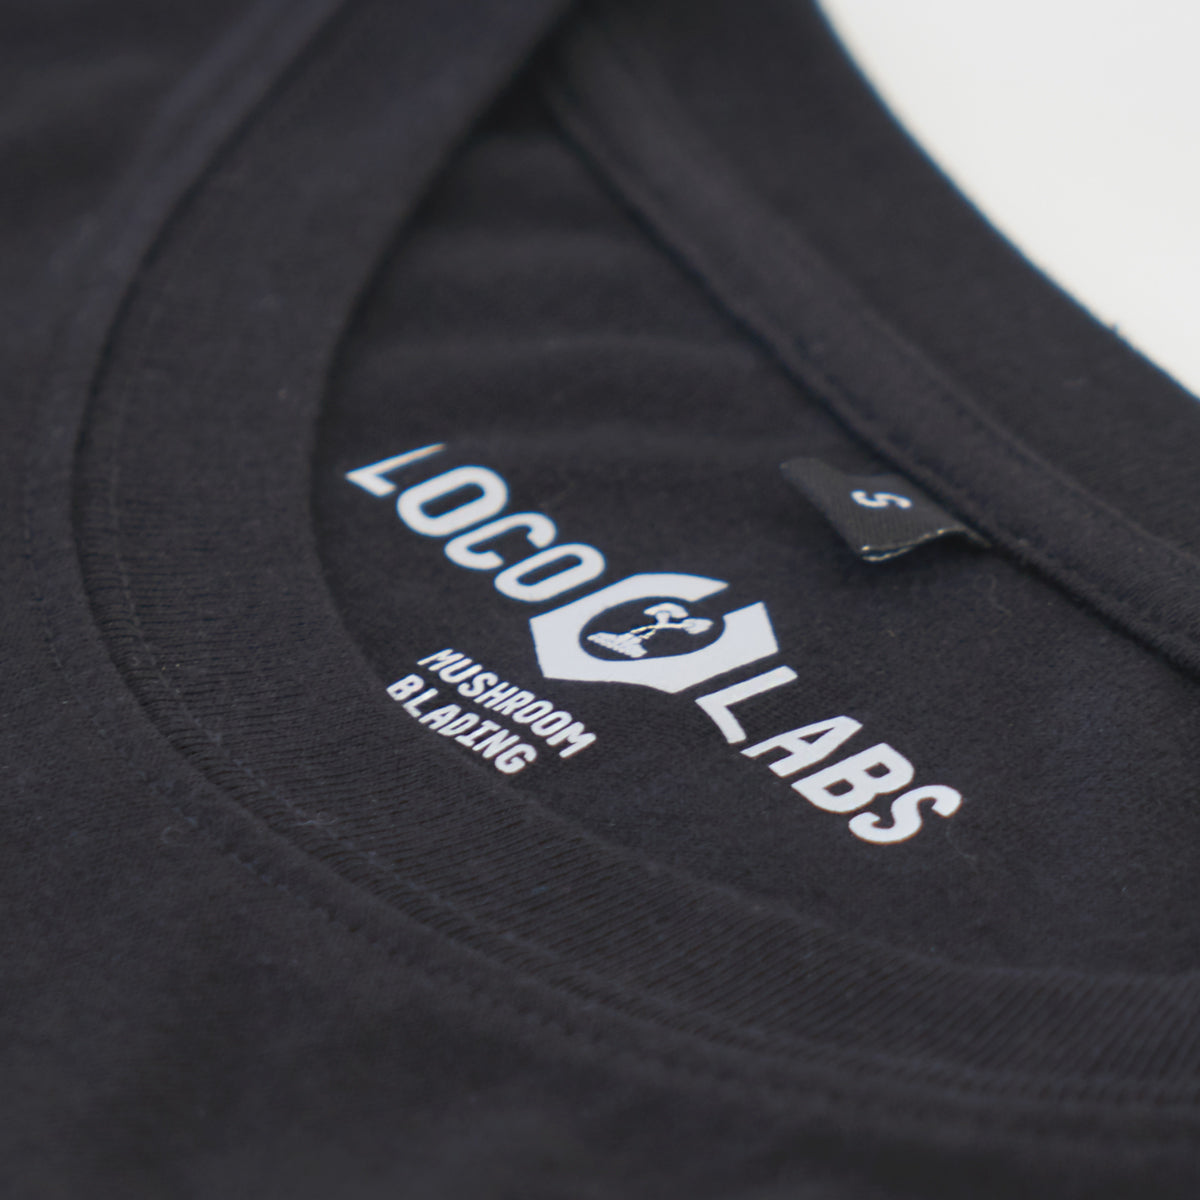 Loco Labs x Mushroom Blading T-Shirt